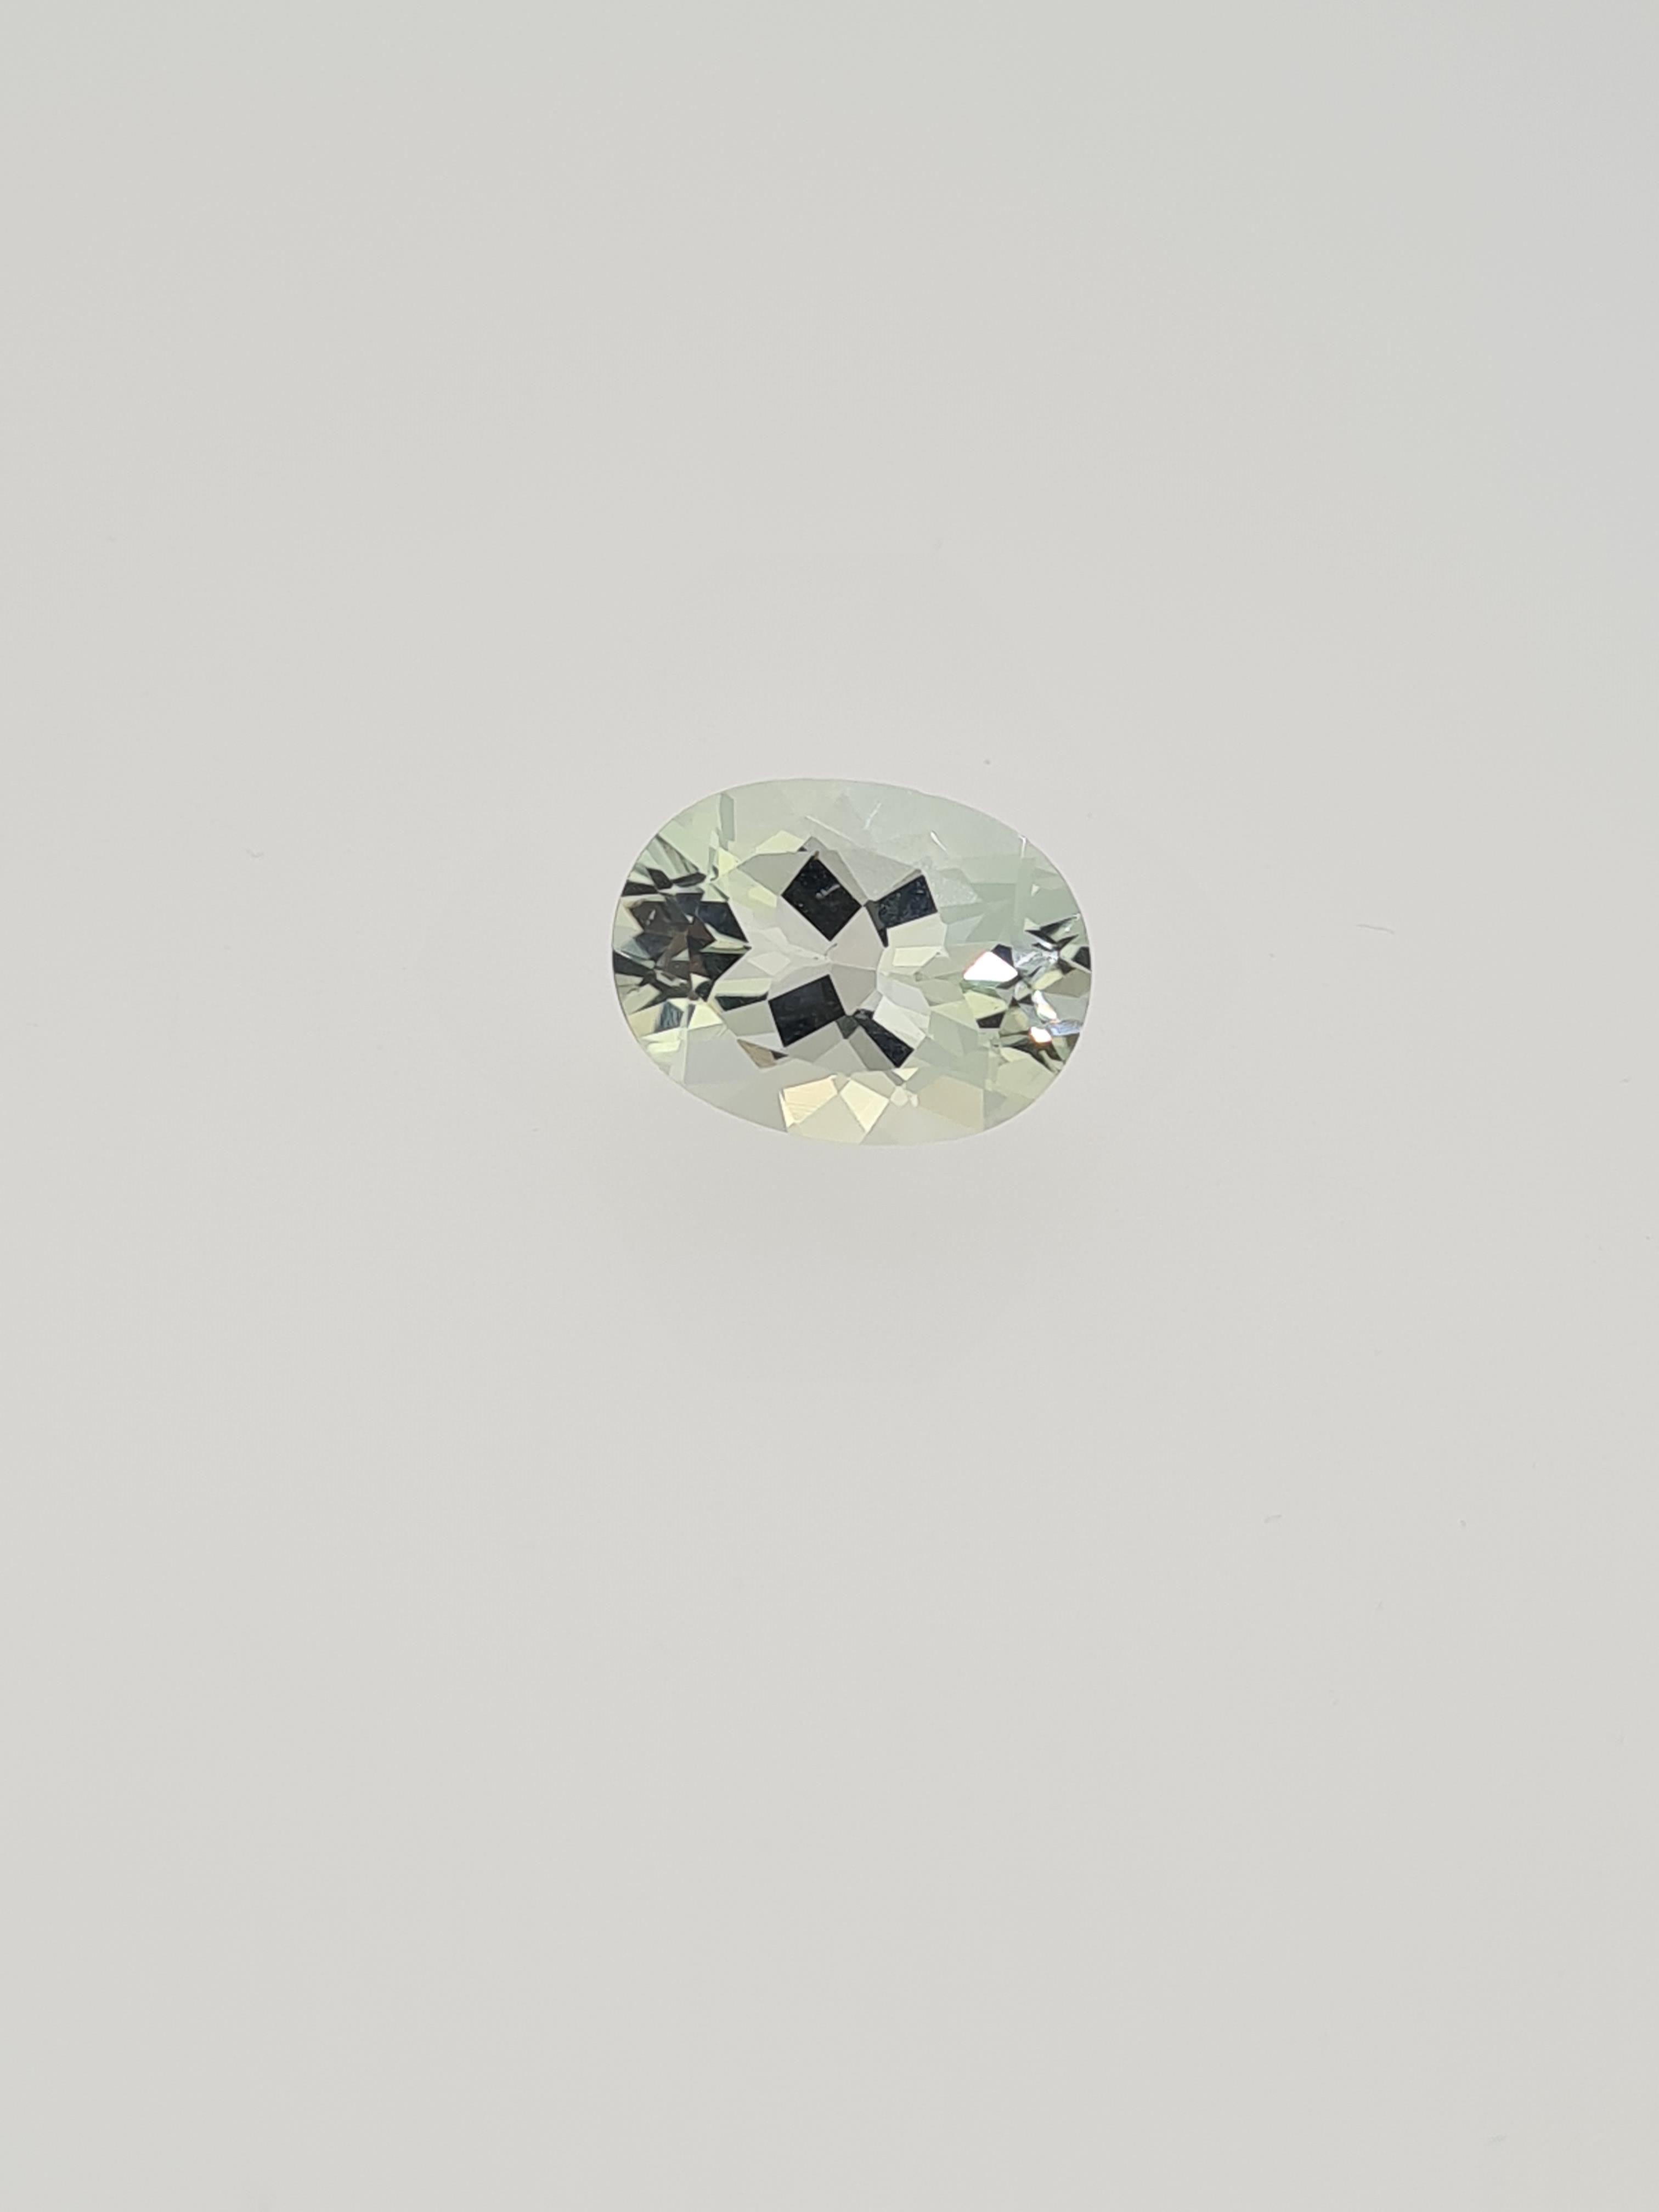 Green amethyst oval cut gem stone - Image 3 of 5